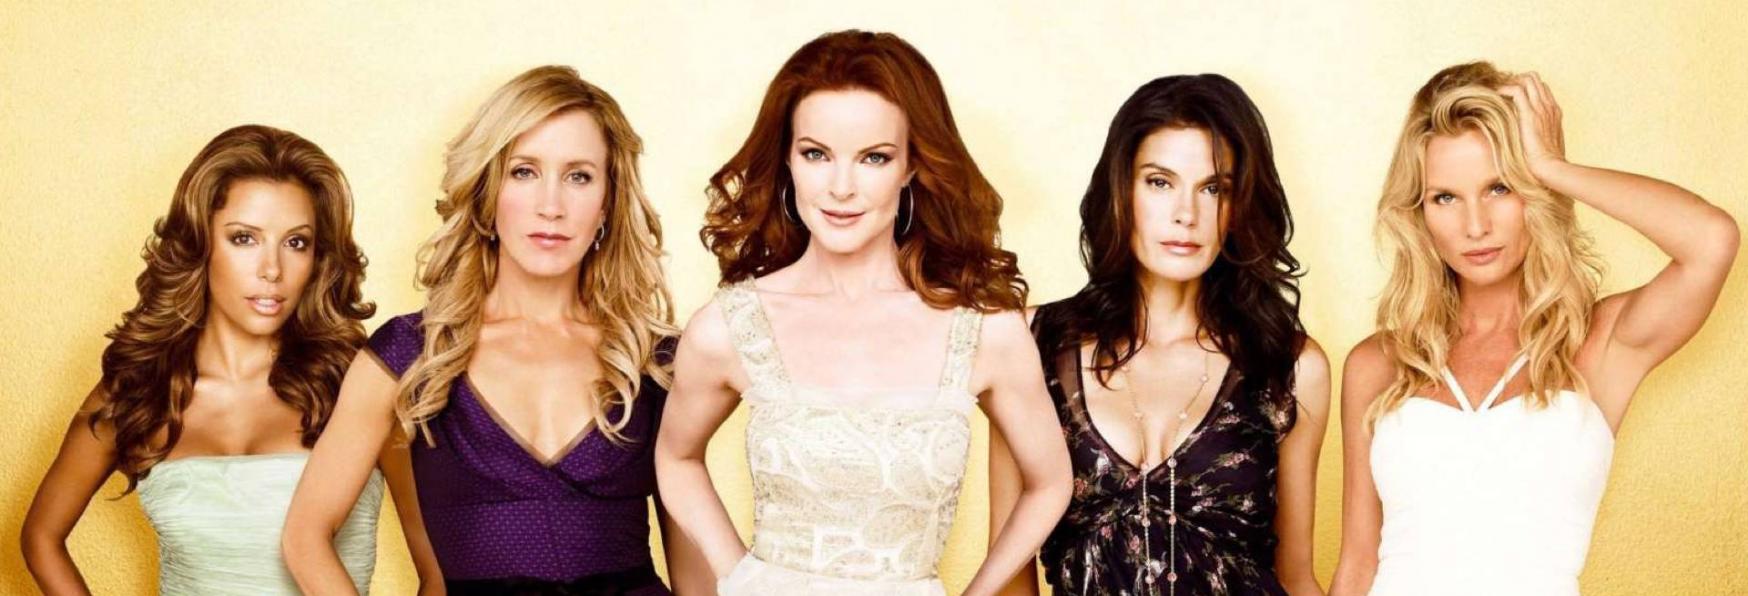 Desperate Housewives: Recensione della Serie TV del 2004 targata ABC